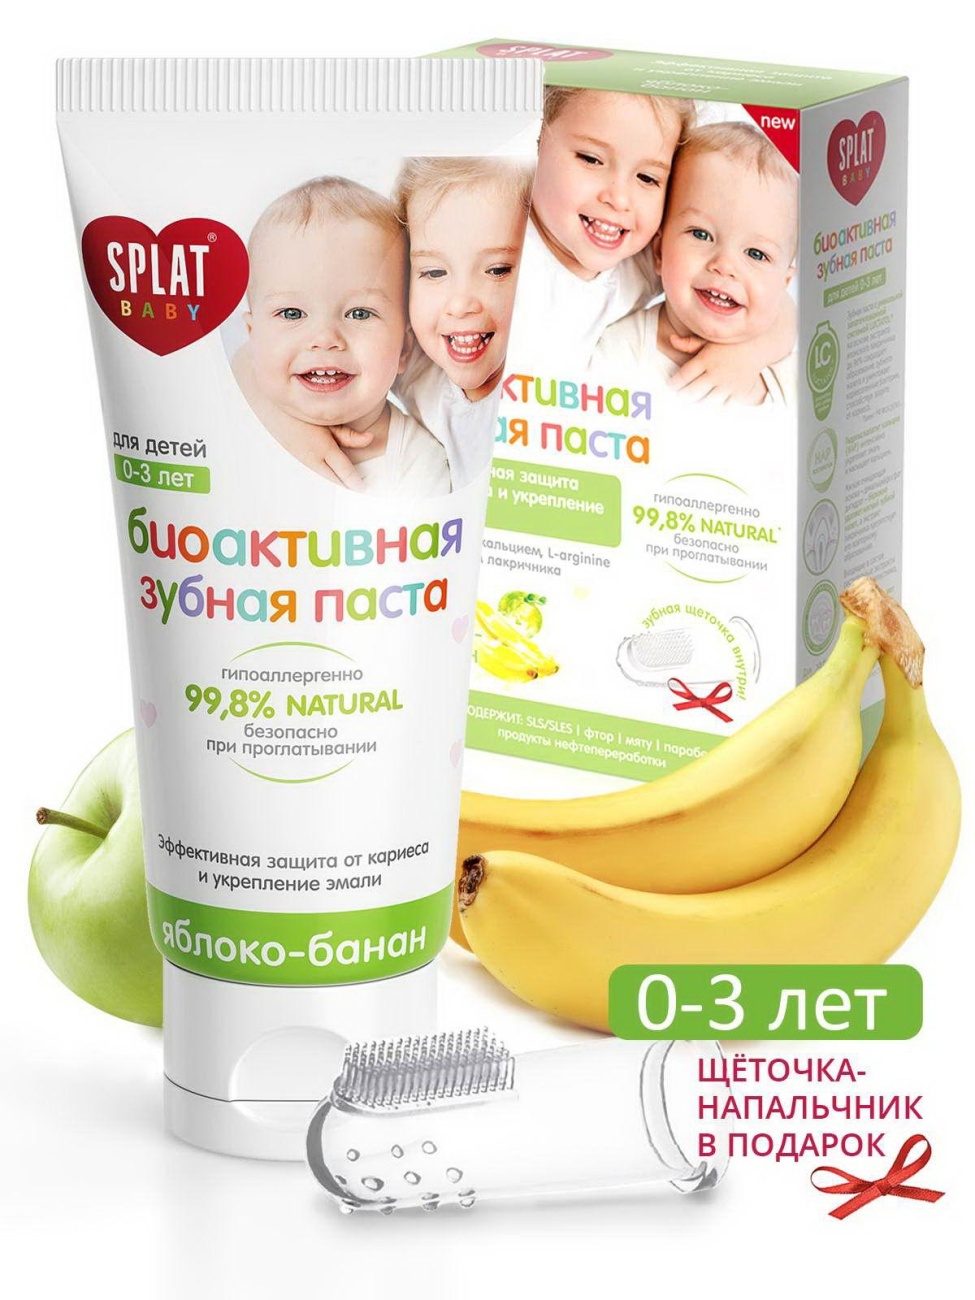 Зубная паста Splat Baby Яблоко-банан детская зубная паста 40мл+сюрприз щетка 4603014006233